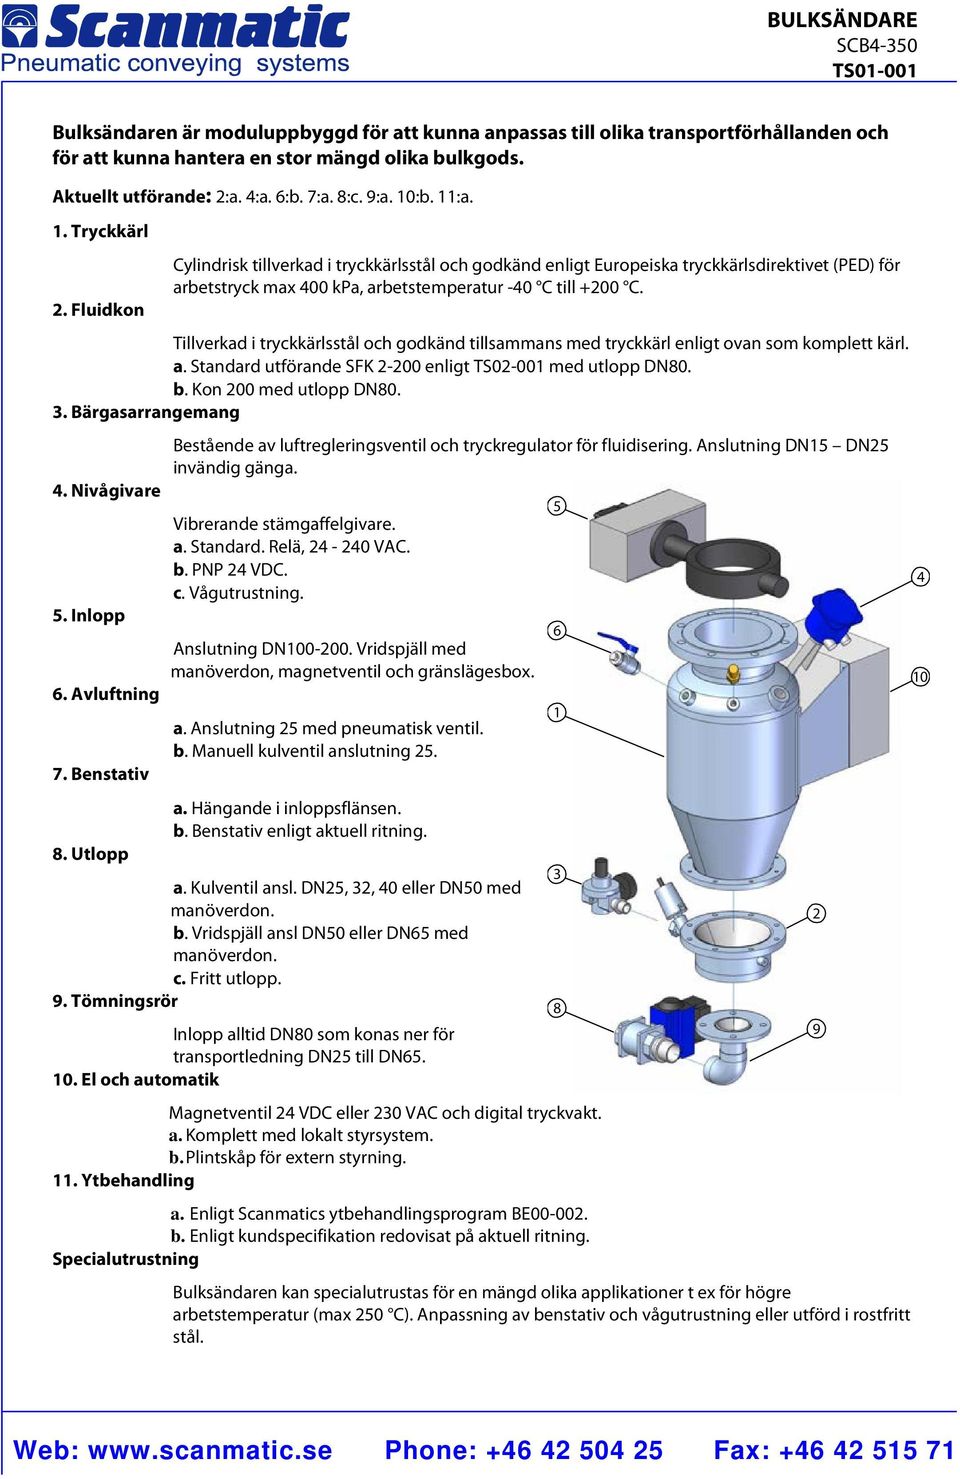 Fluidkon Cylindrisk tillverkad i tryckkärlsstål och godkänd enligt Europeiska tryckkärlsdirektivet (PED) för arbetstryck max 400 kpa, arbetstemperatur 40 C till +200 C.